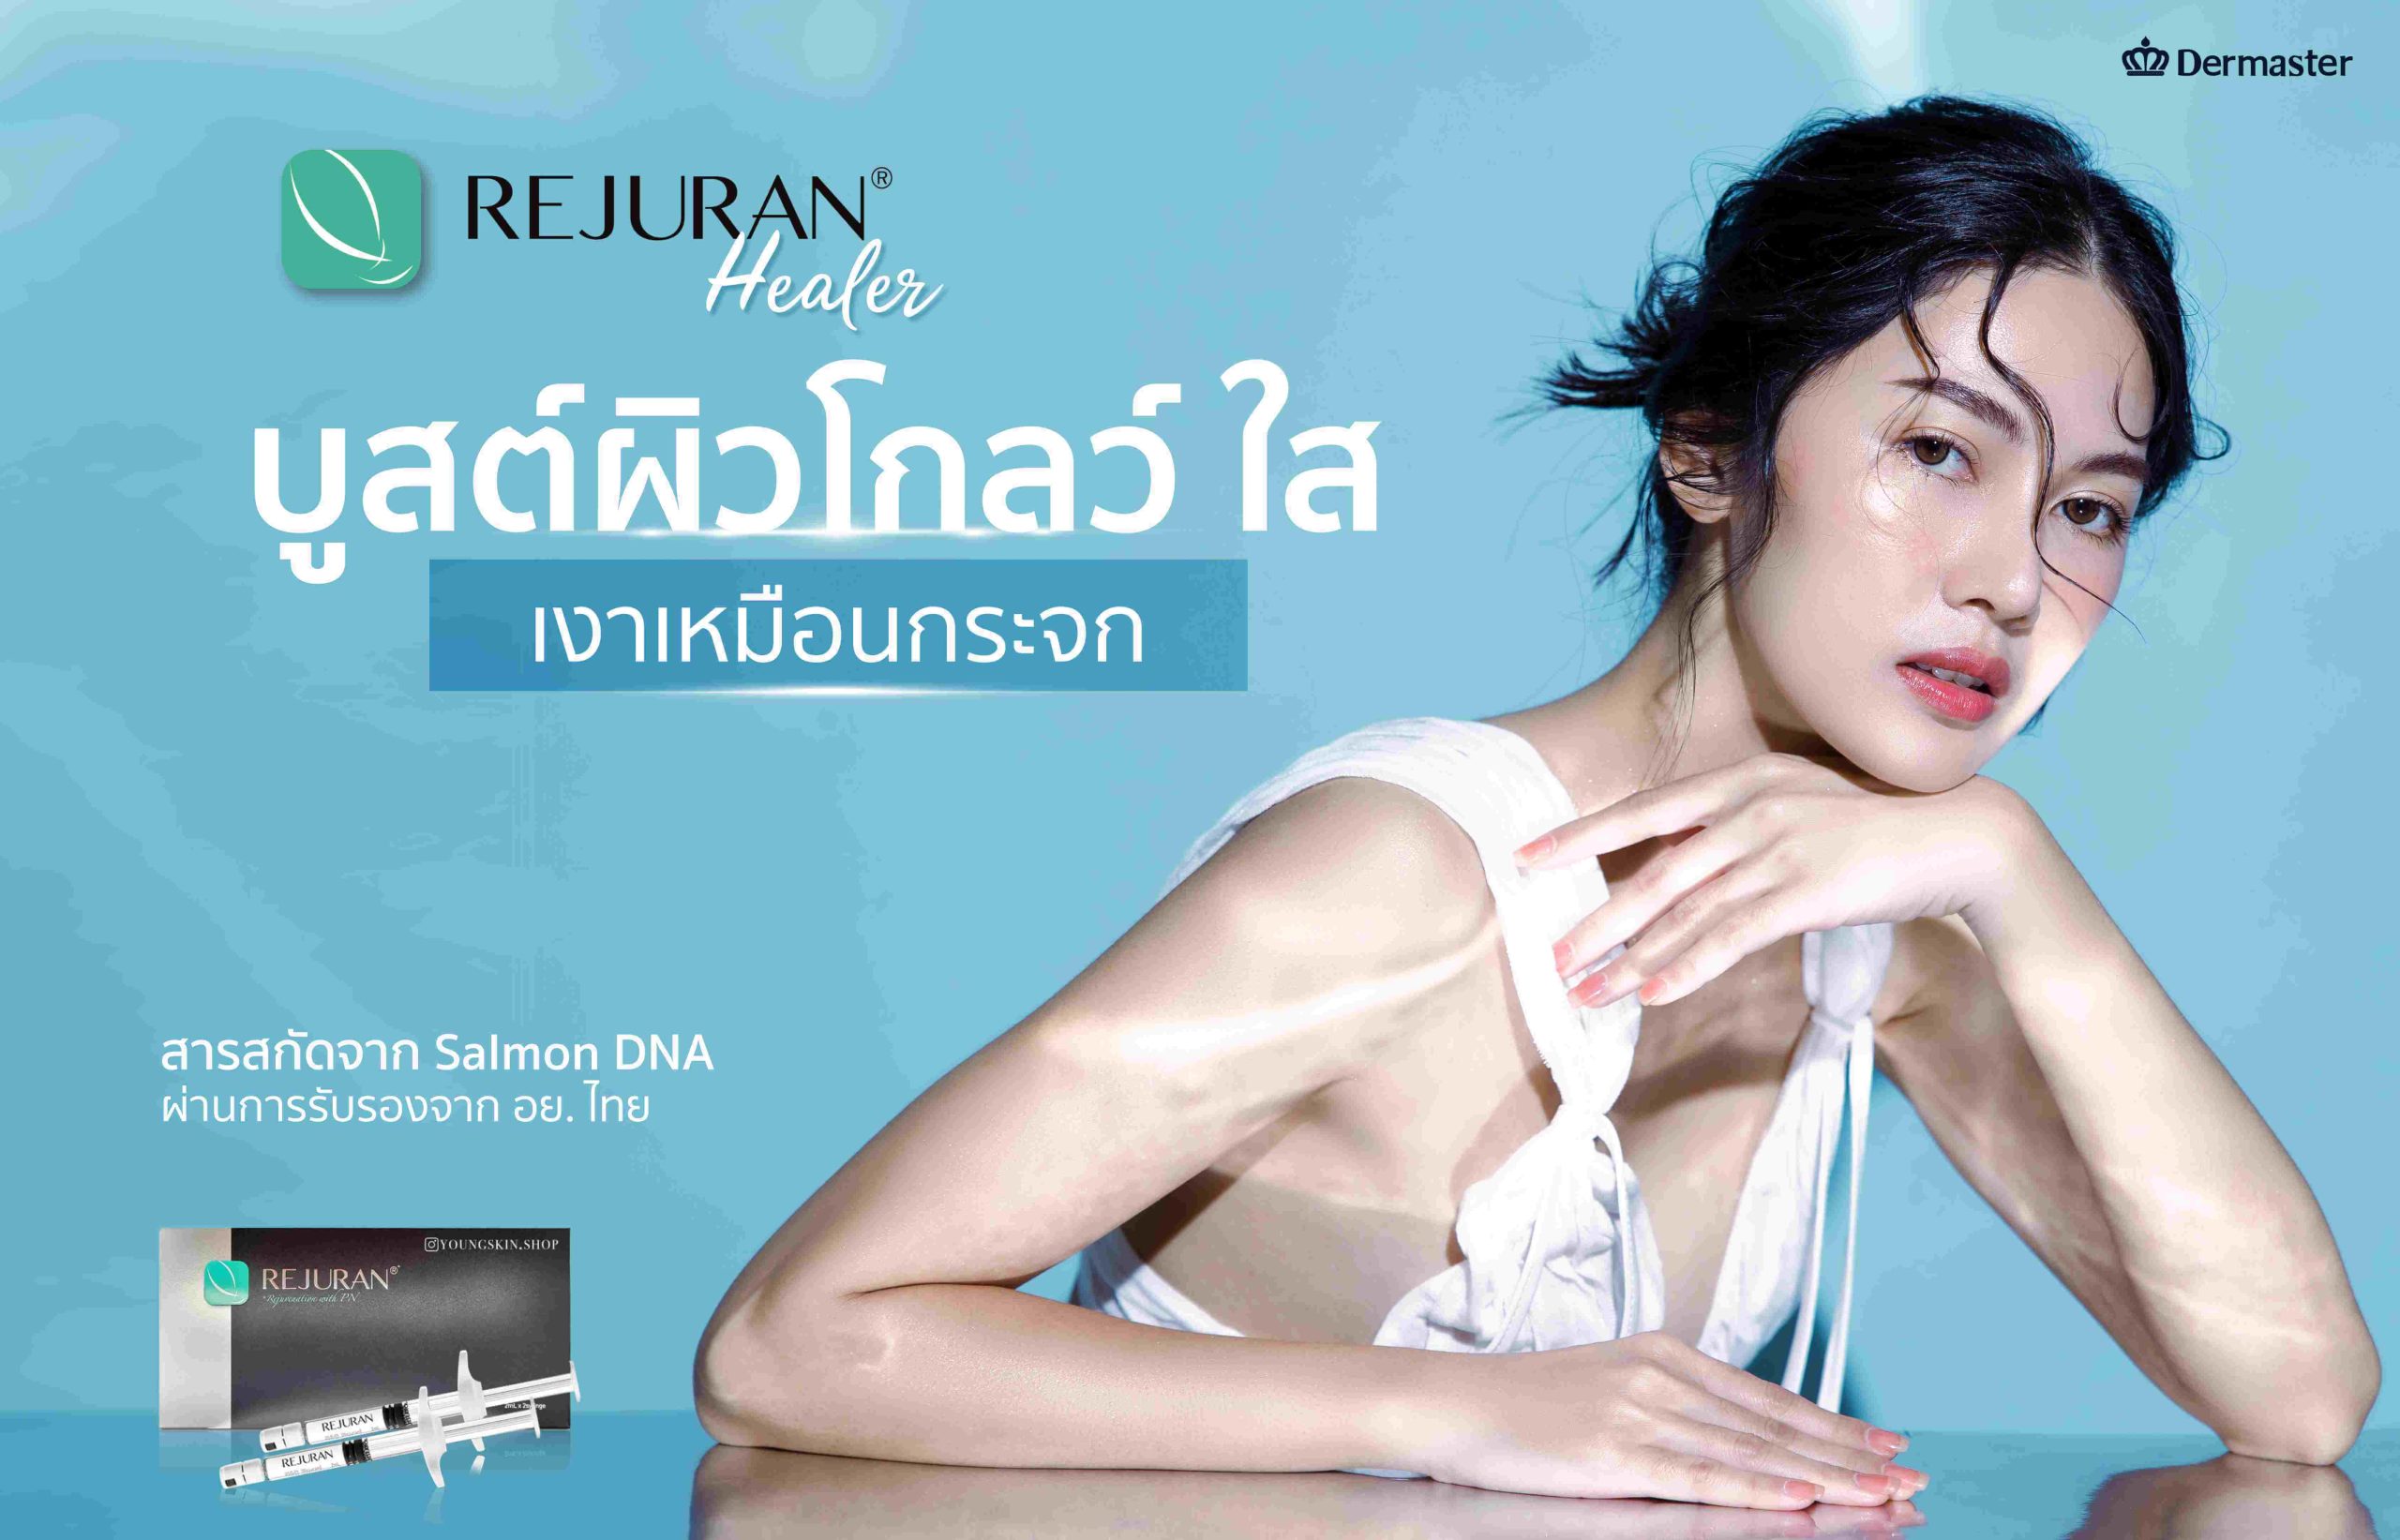 เคล็ดลับรีจูรัน REJURAN รีจูรันในไทย ผิวหน้าฉ่ำวาวแบบ Glass skin จาก Dermaster สูตรแท้นวัตกรรมจากเกาหลี